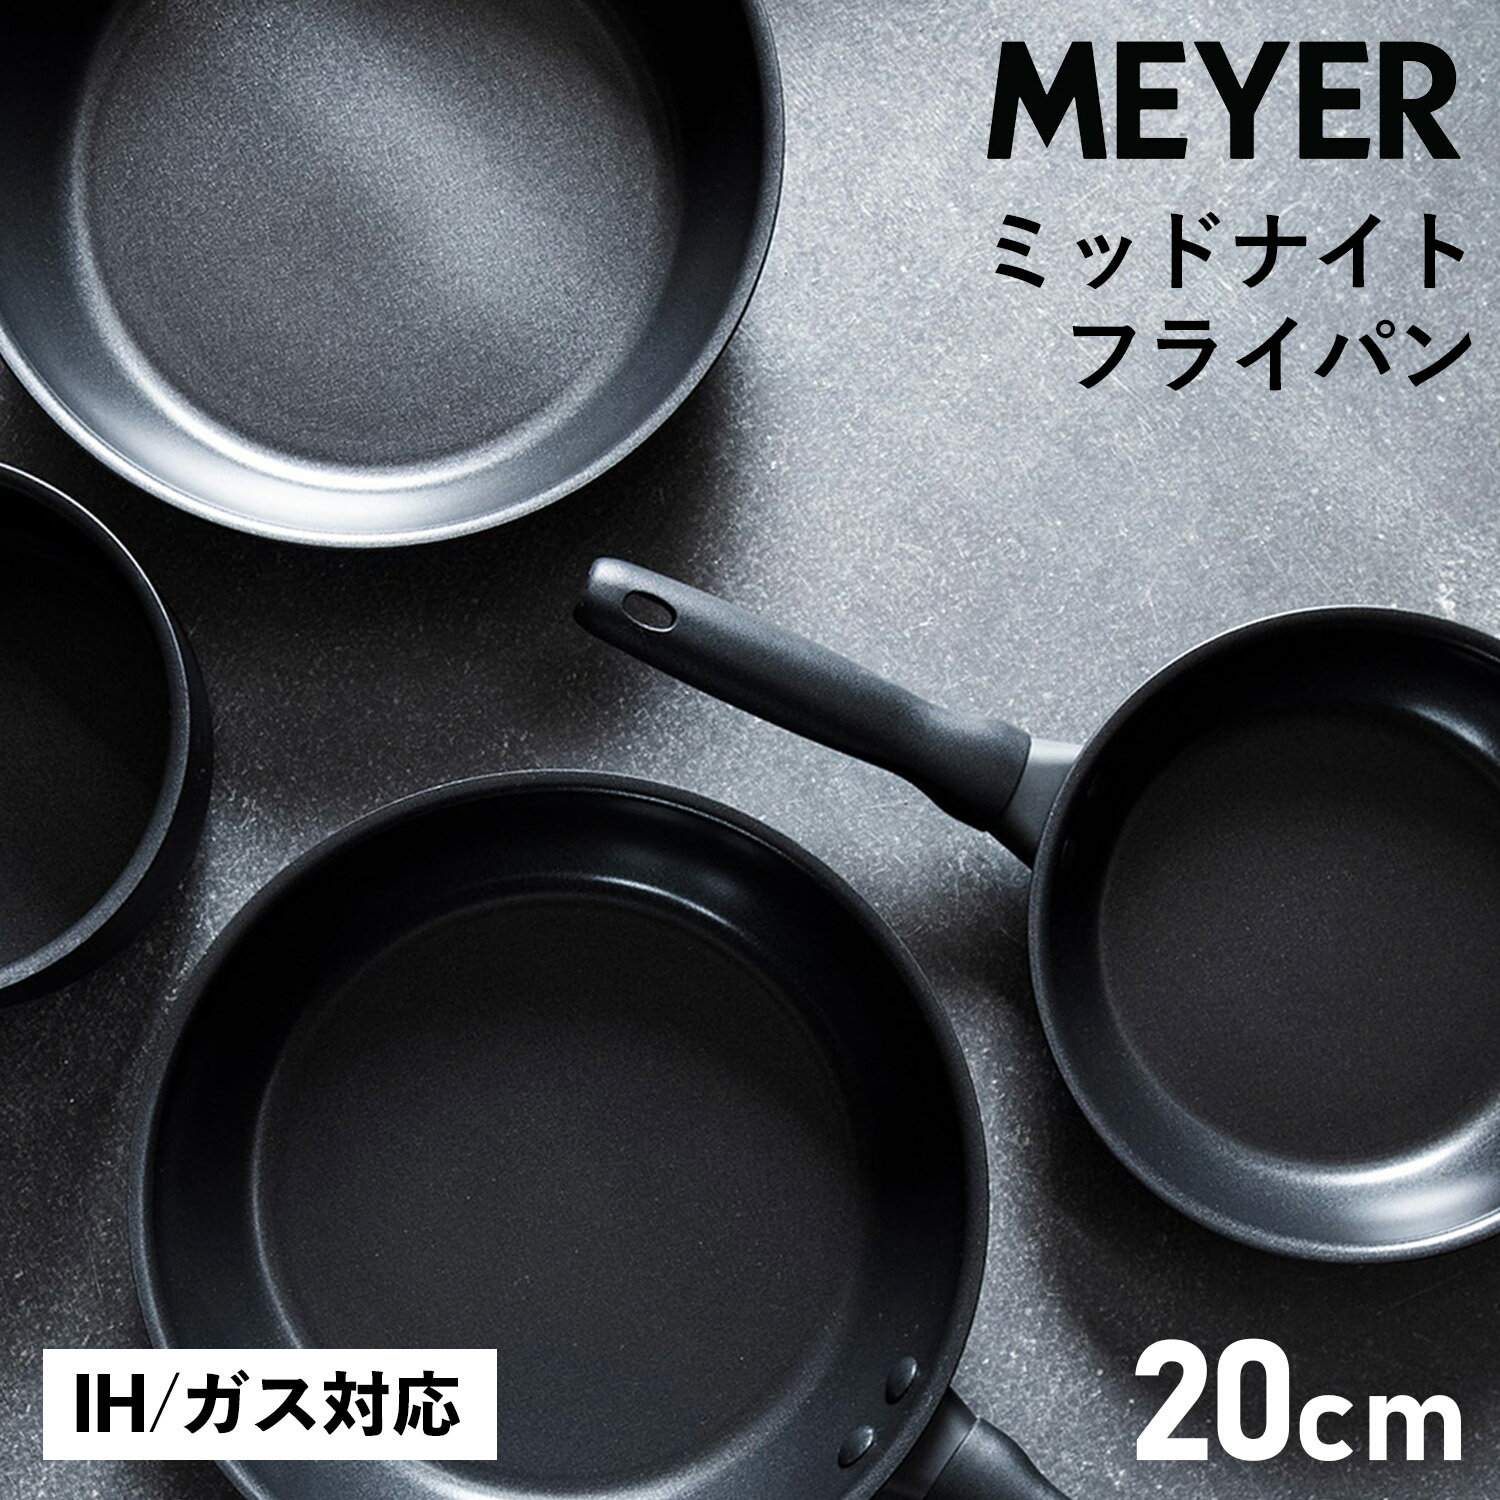 MEYER マイヤー フライパン 20cm ミッドナイト IH ガス対応 MIDNIGHT FRY PAN MNH-P20